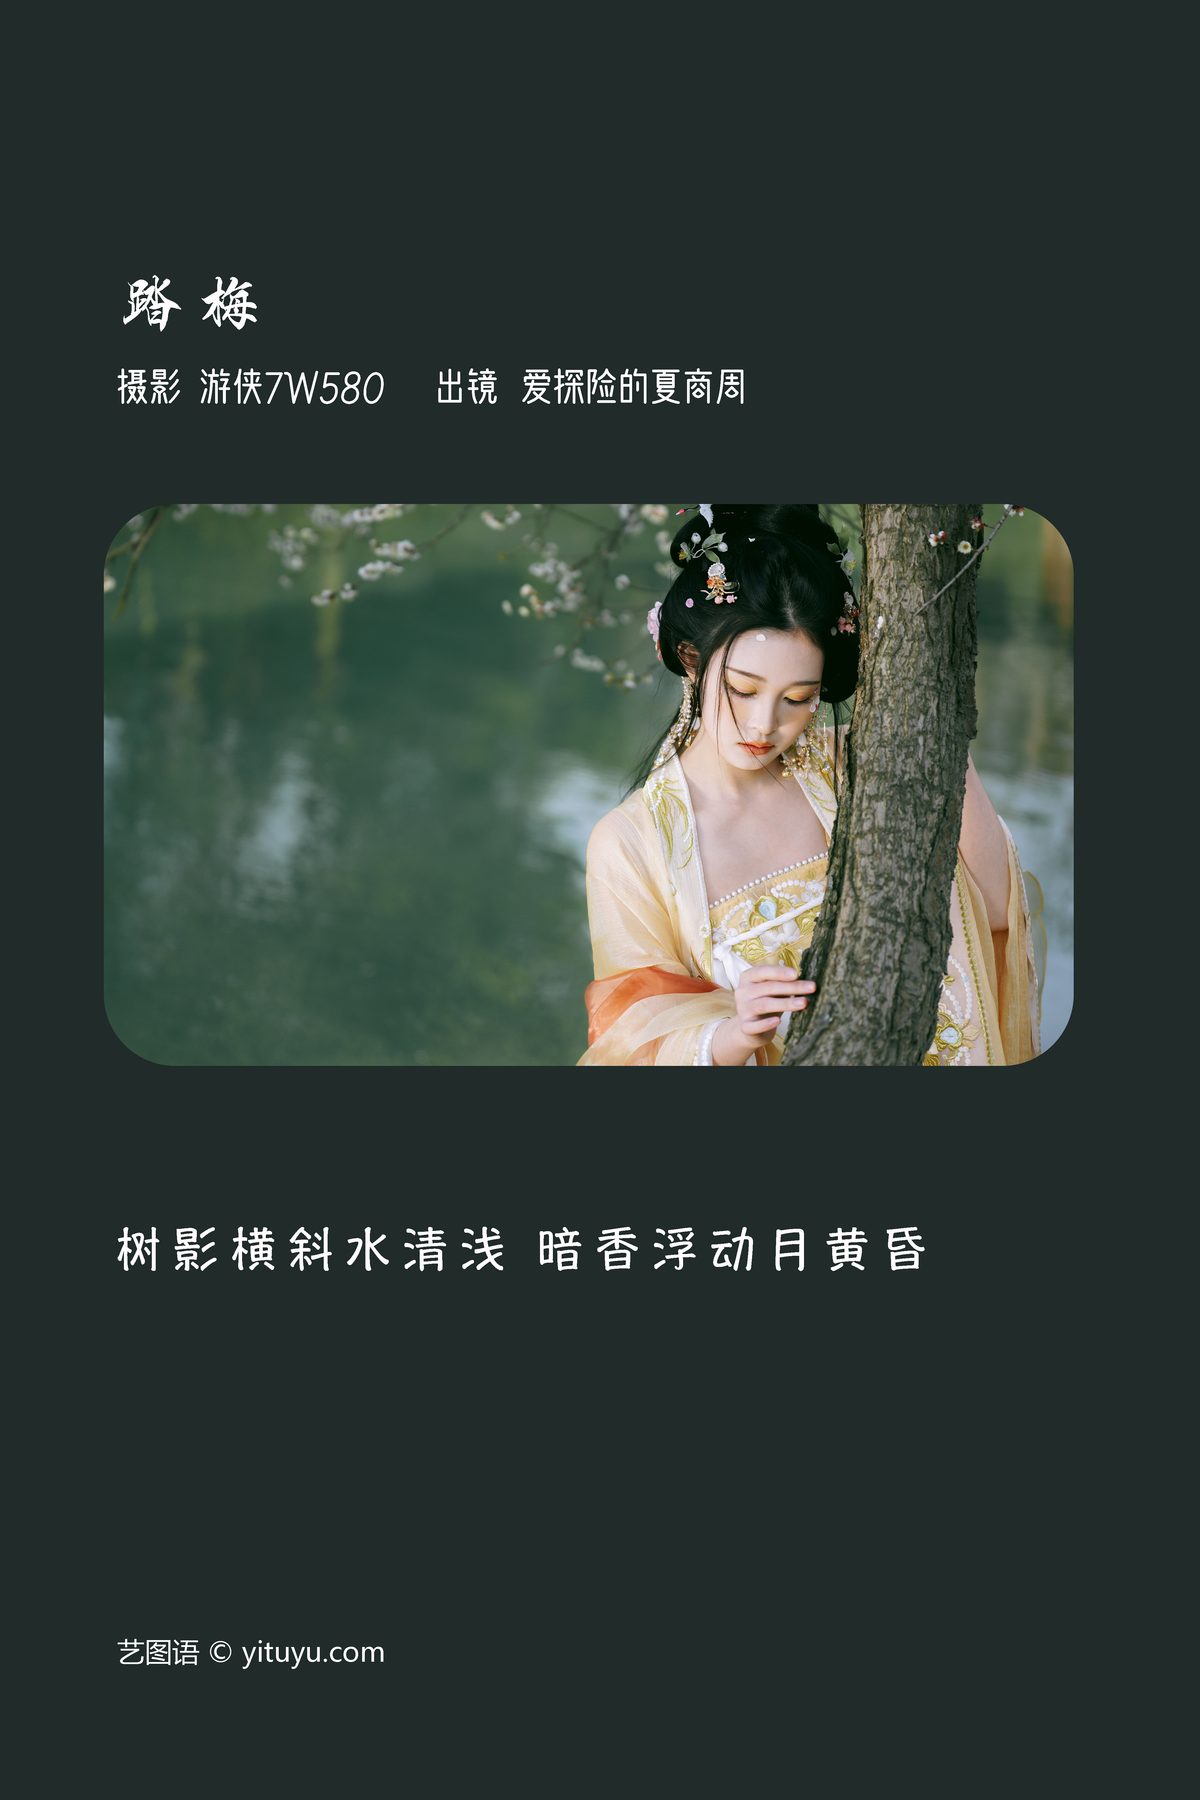 YiTuYu艺图语 Vol 3718 Ai Tan Xian De Xia Shang Zhou 0002 3586698213.jpg